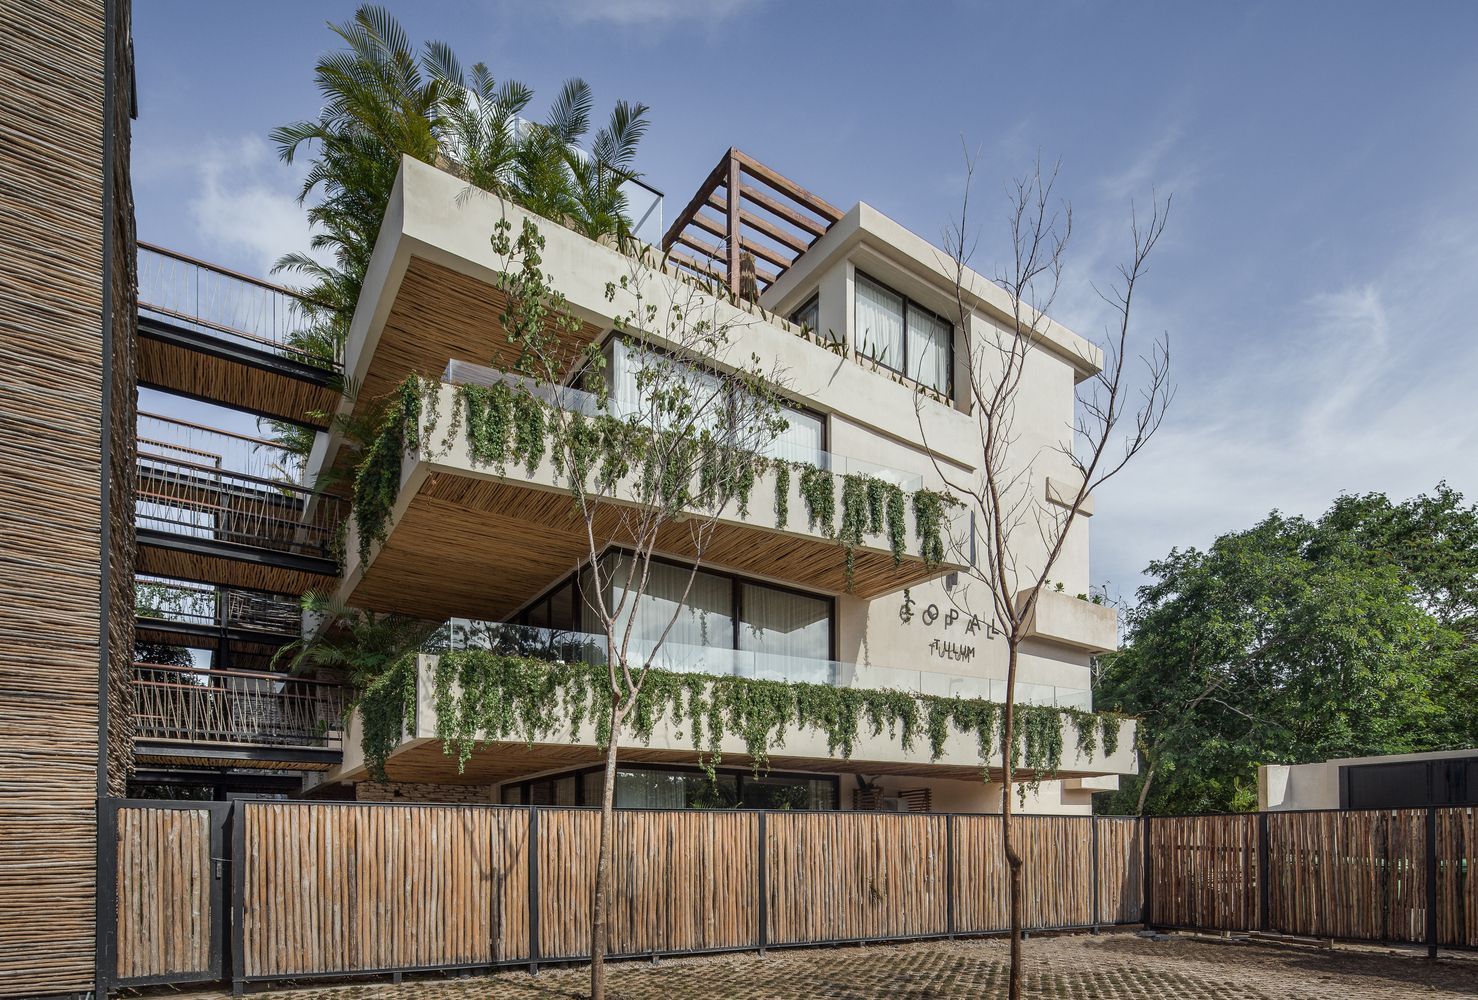 Джунгли в квартире: дружественные к экологии апартаменты построили в Мексике – фото